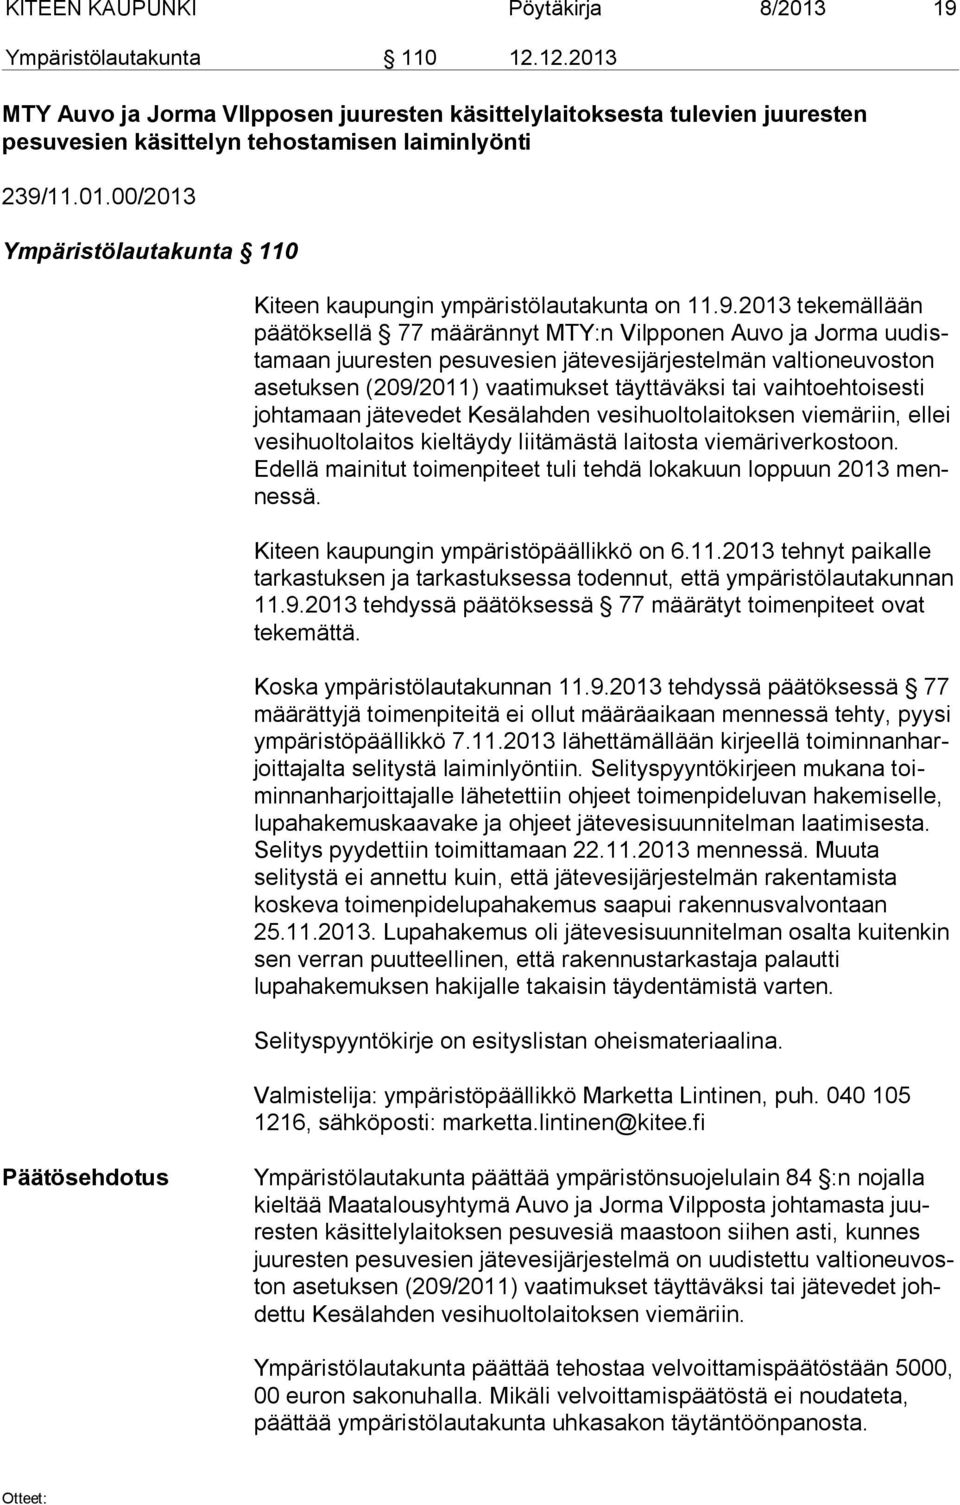 9.2013 tekemällään pää tök sel lä 77 määrännyt MTY:n Vilpponen Auvo ja Jorma uu dista maan juuresten pesuvesien jätevesijärjestelmän valtioneuvoston ase tuk sen (209/2011) vaatimukset täyttäväksi tai